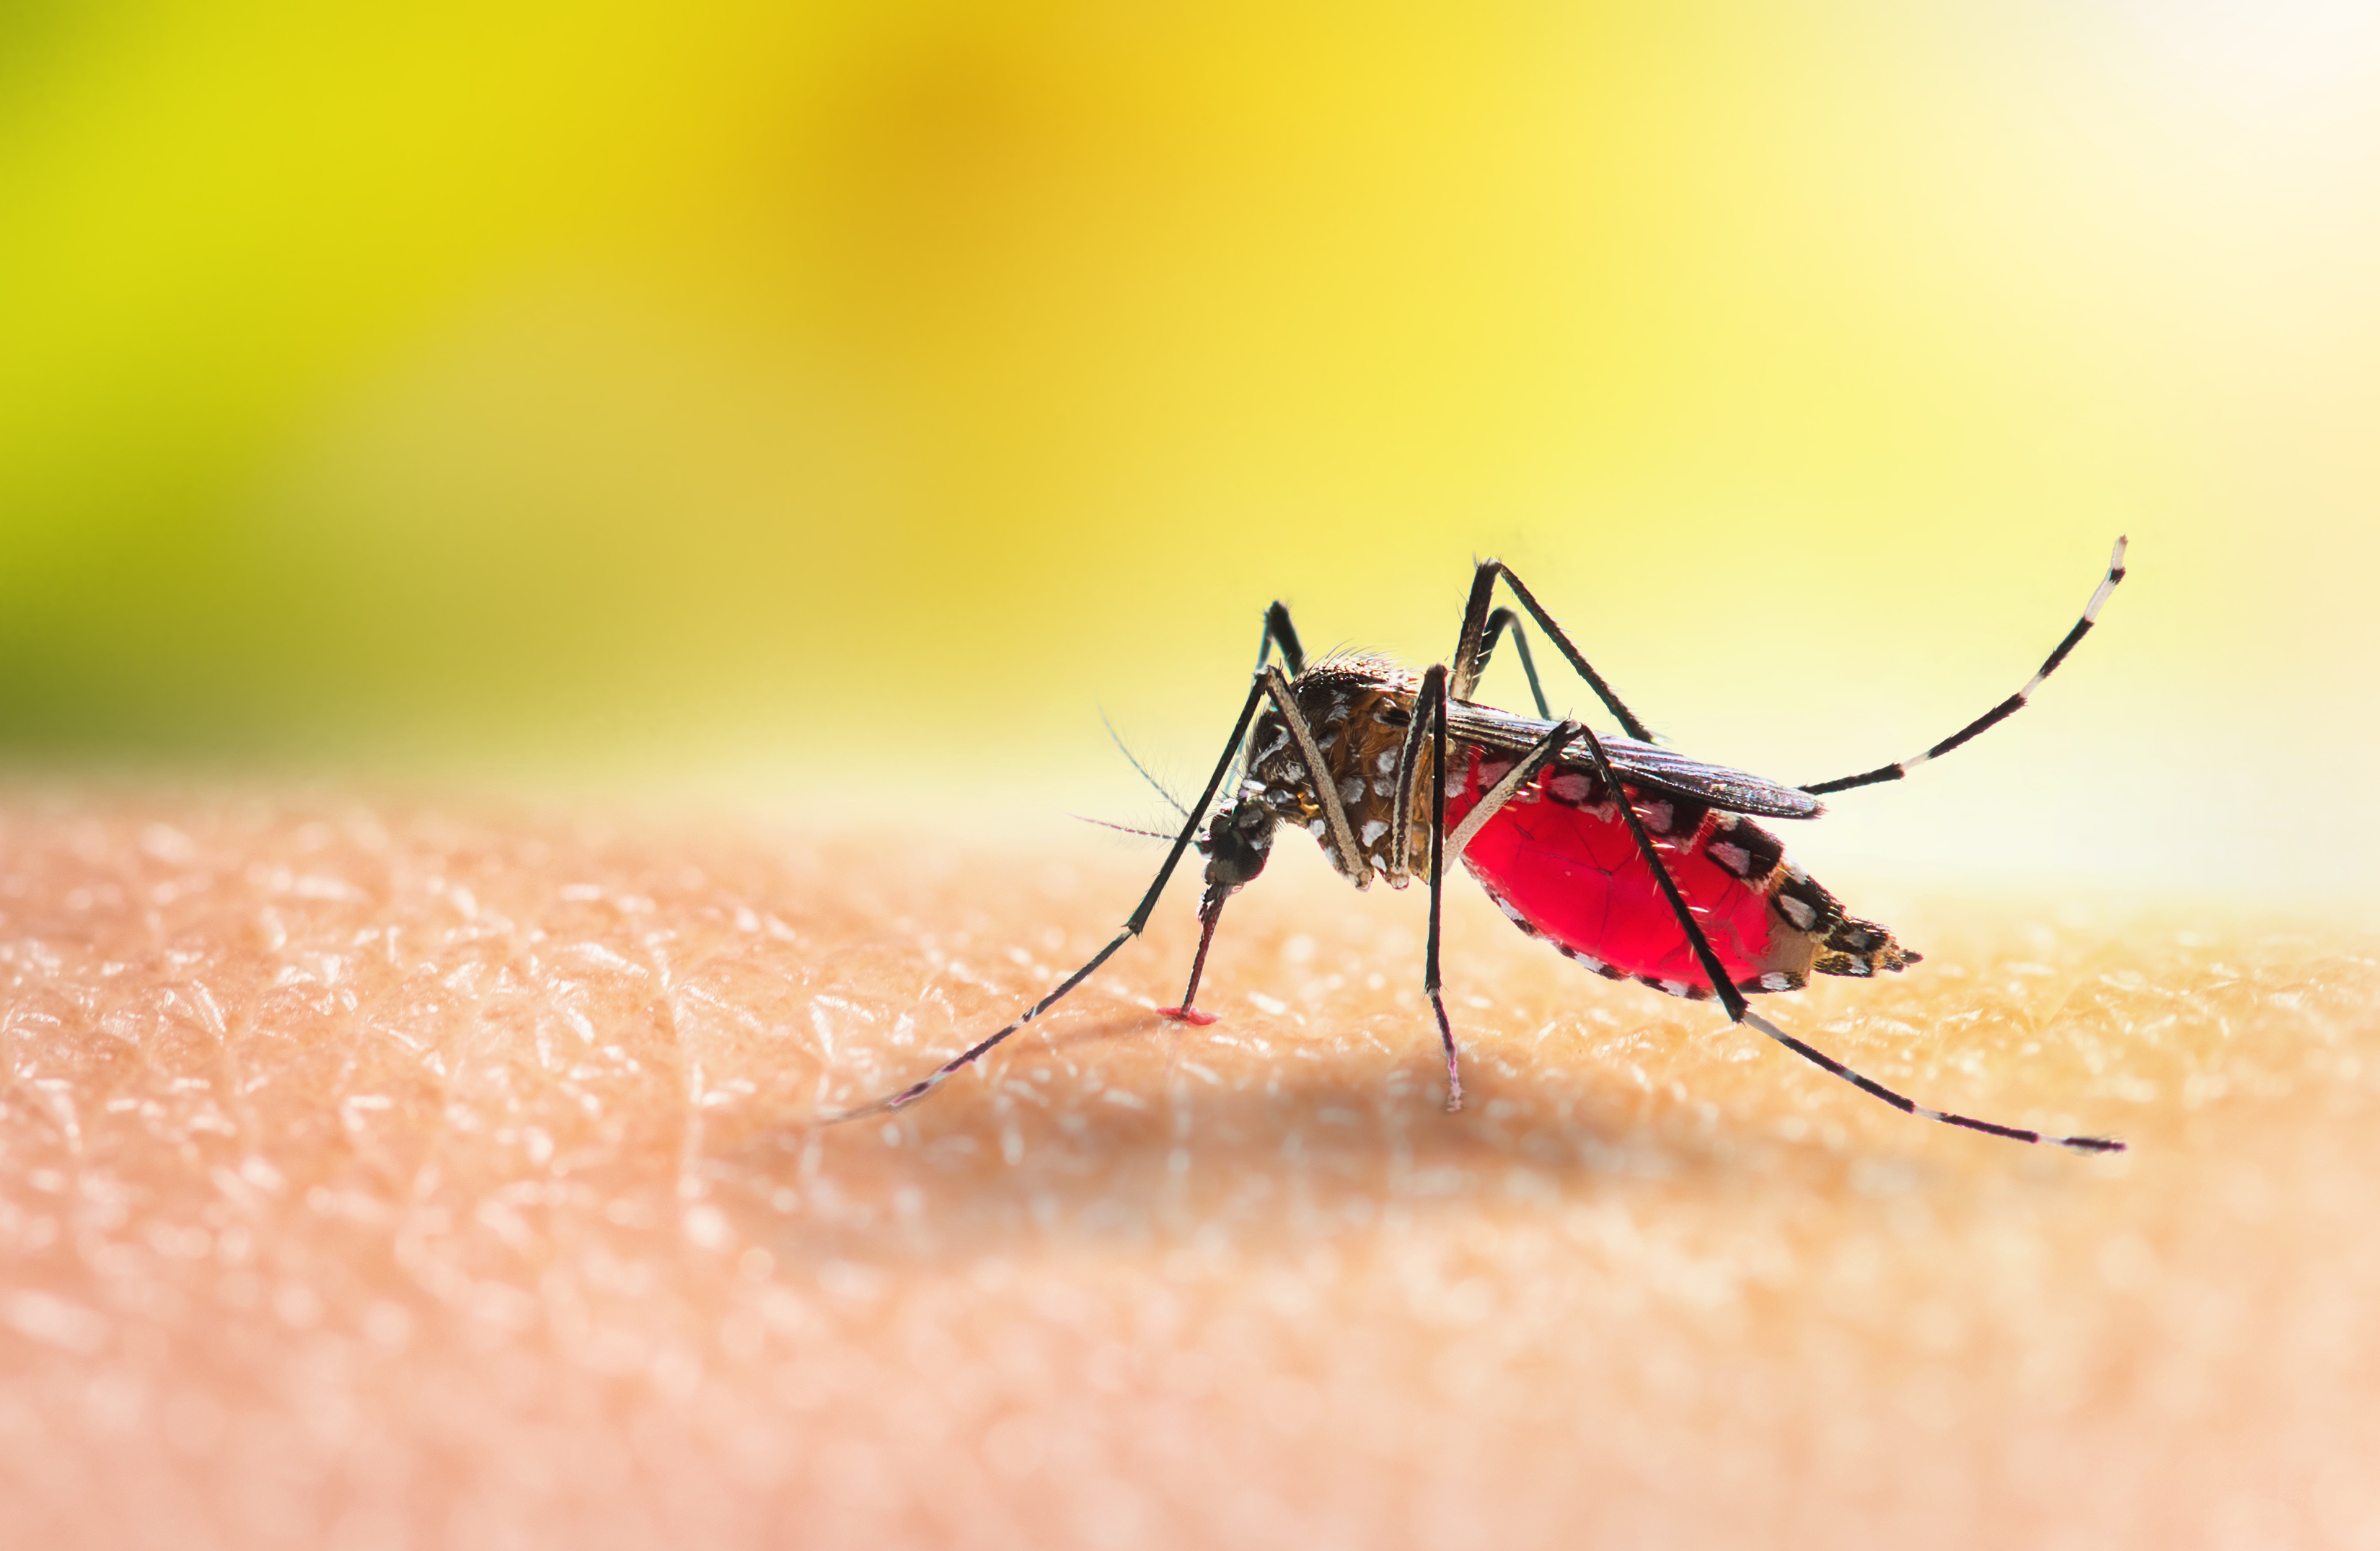 Imagem: mosquito no braço de uma pessoa